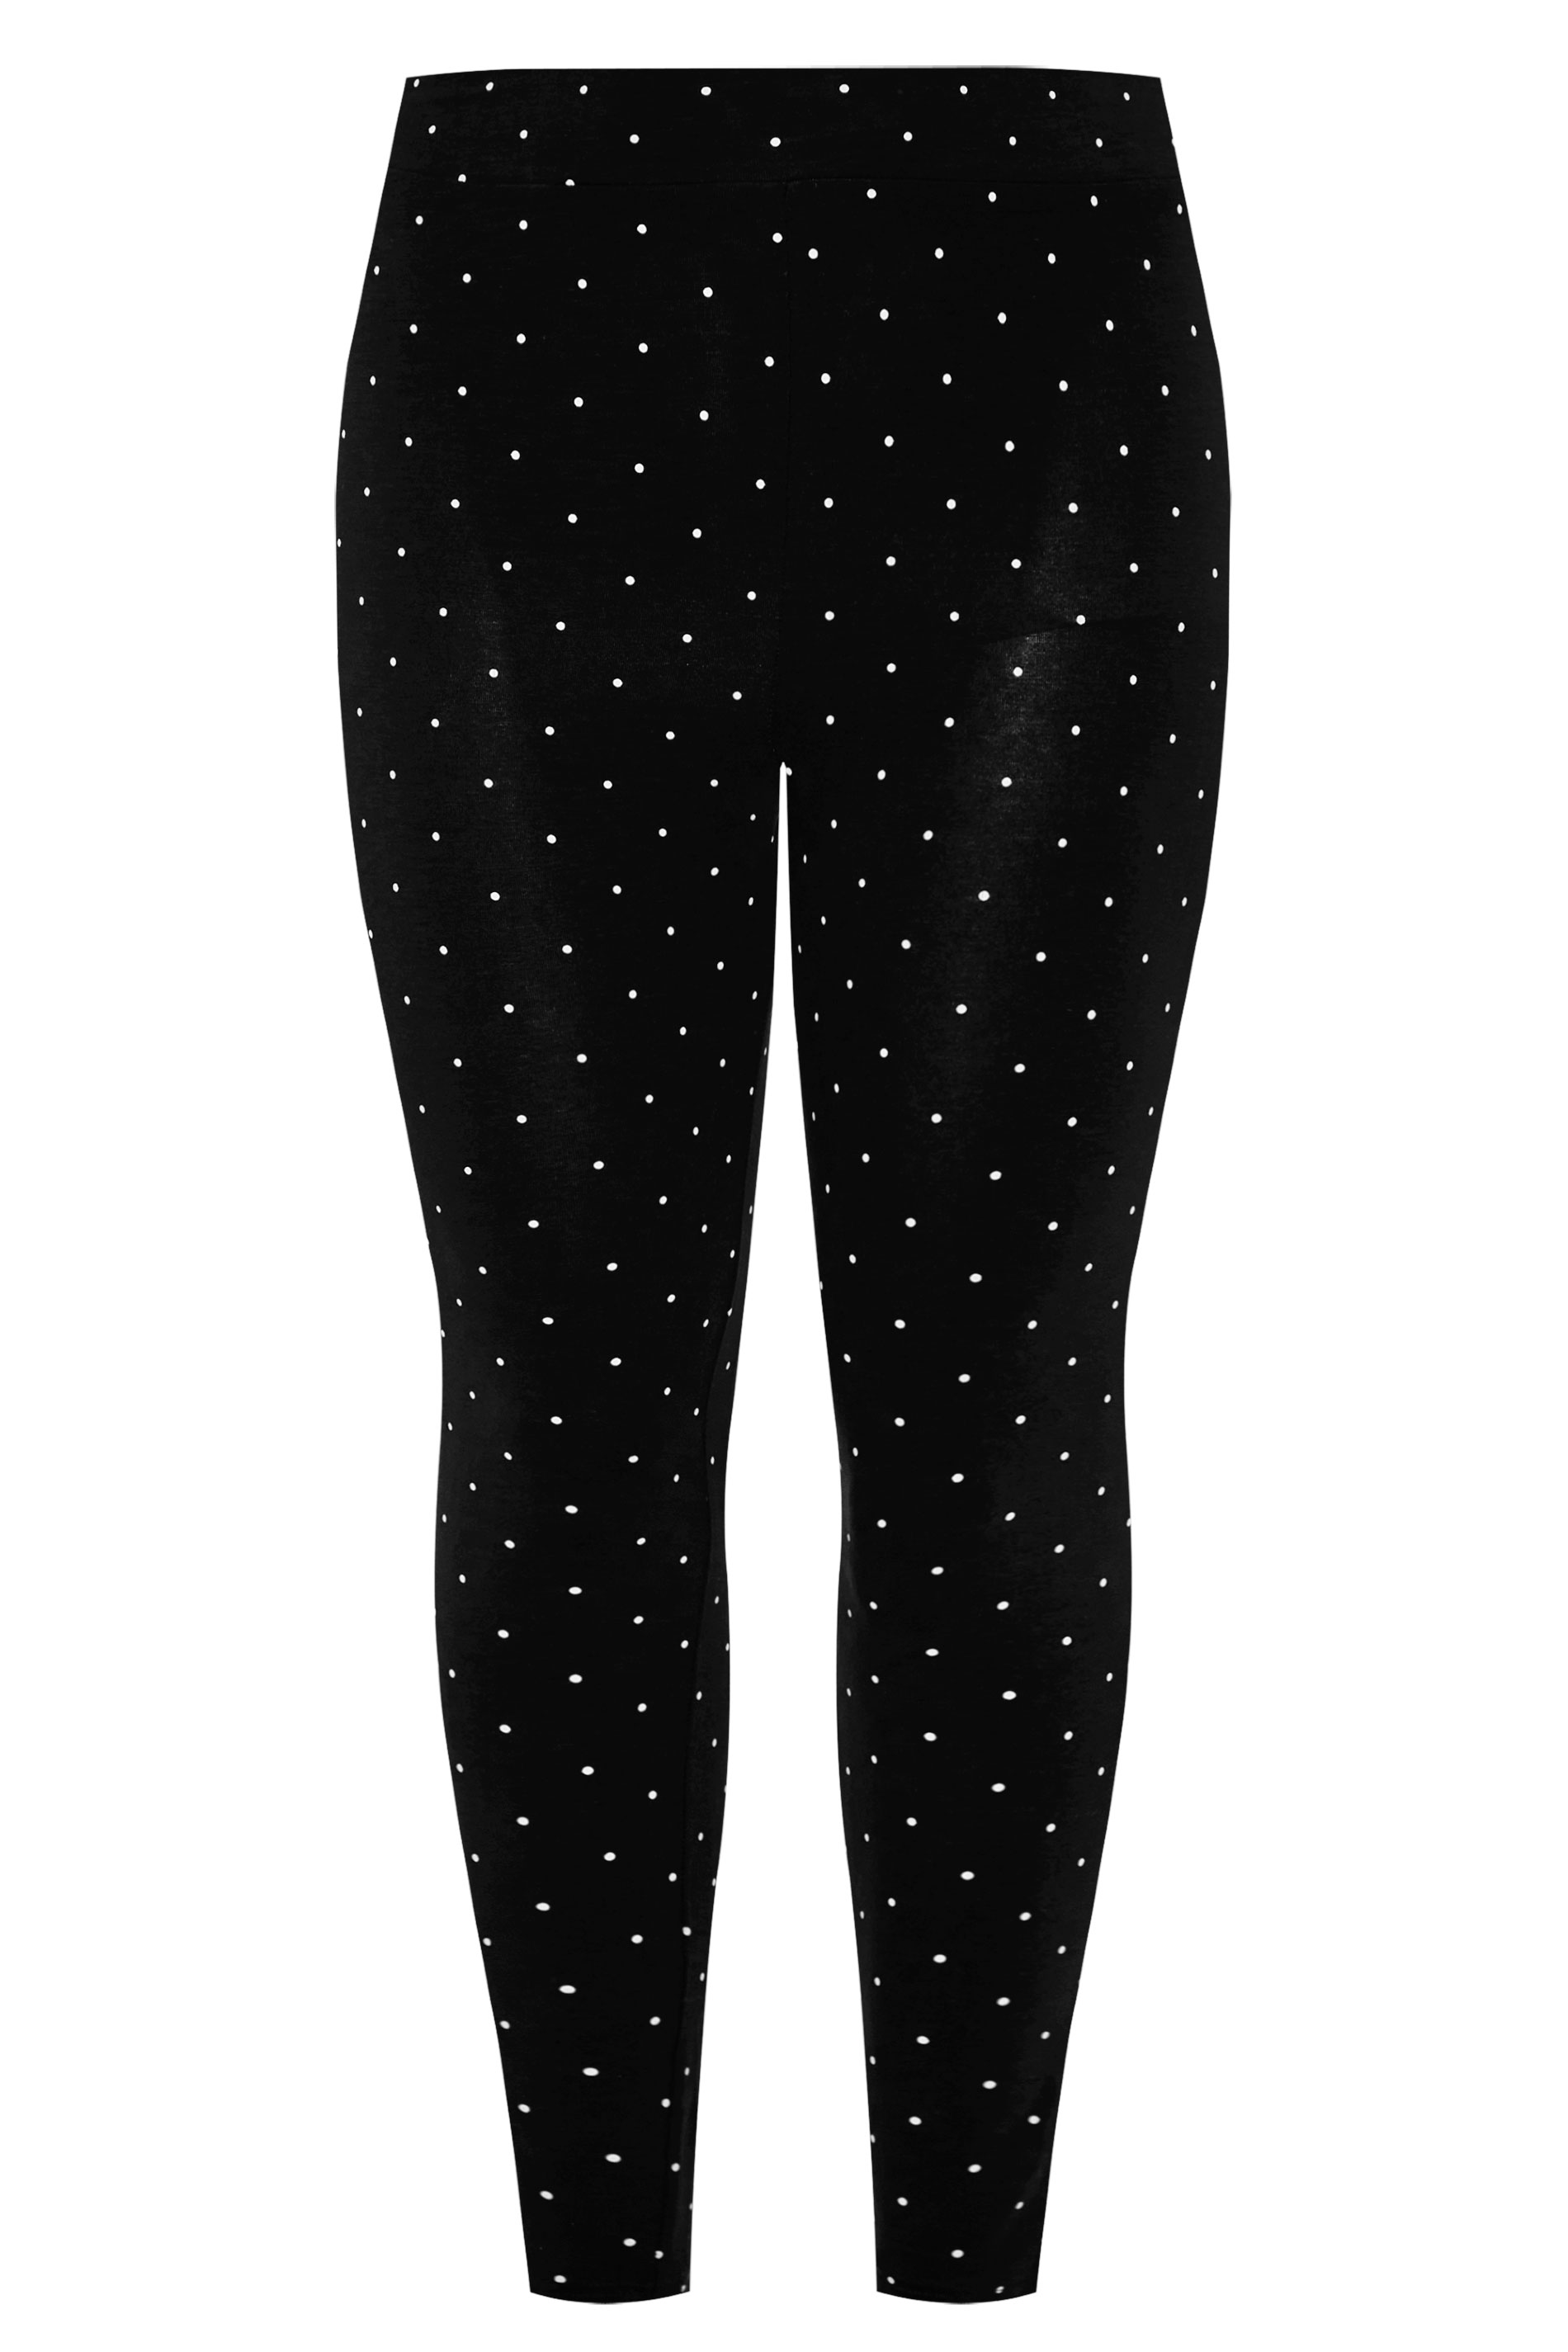 Black Polka Dot Leggings | Yours Clothing